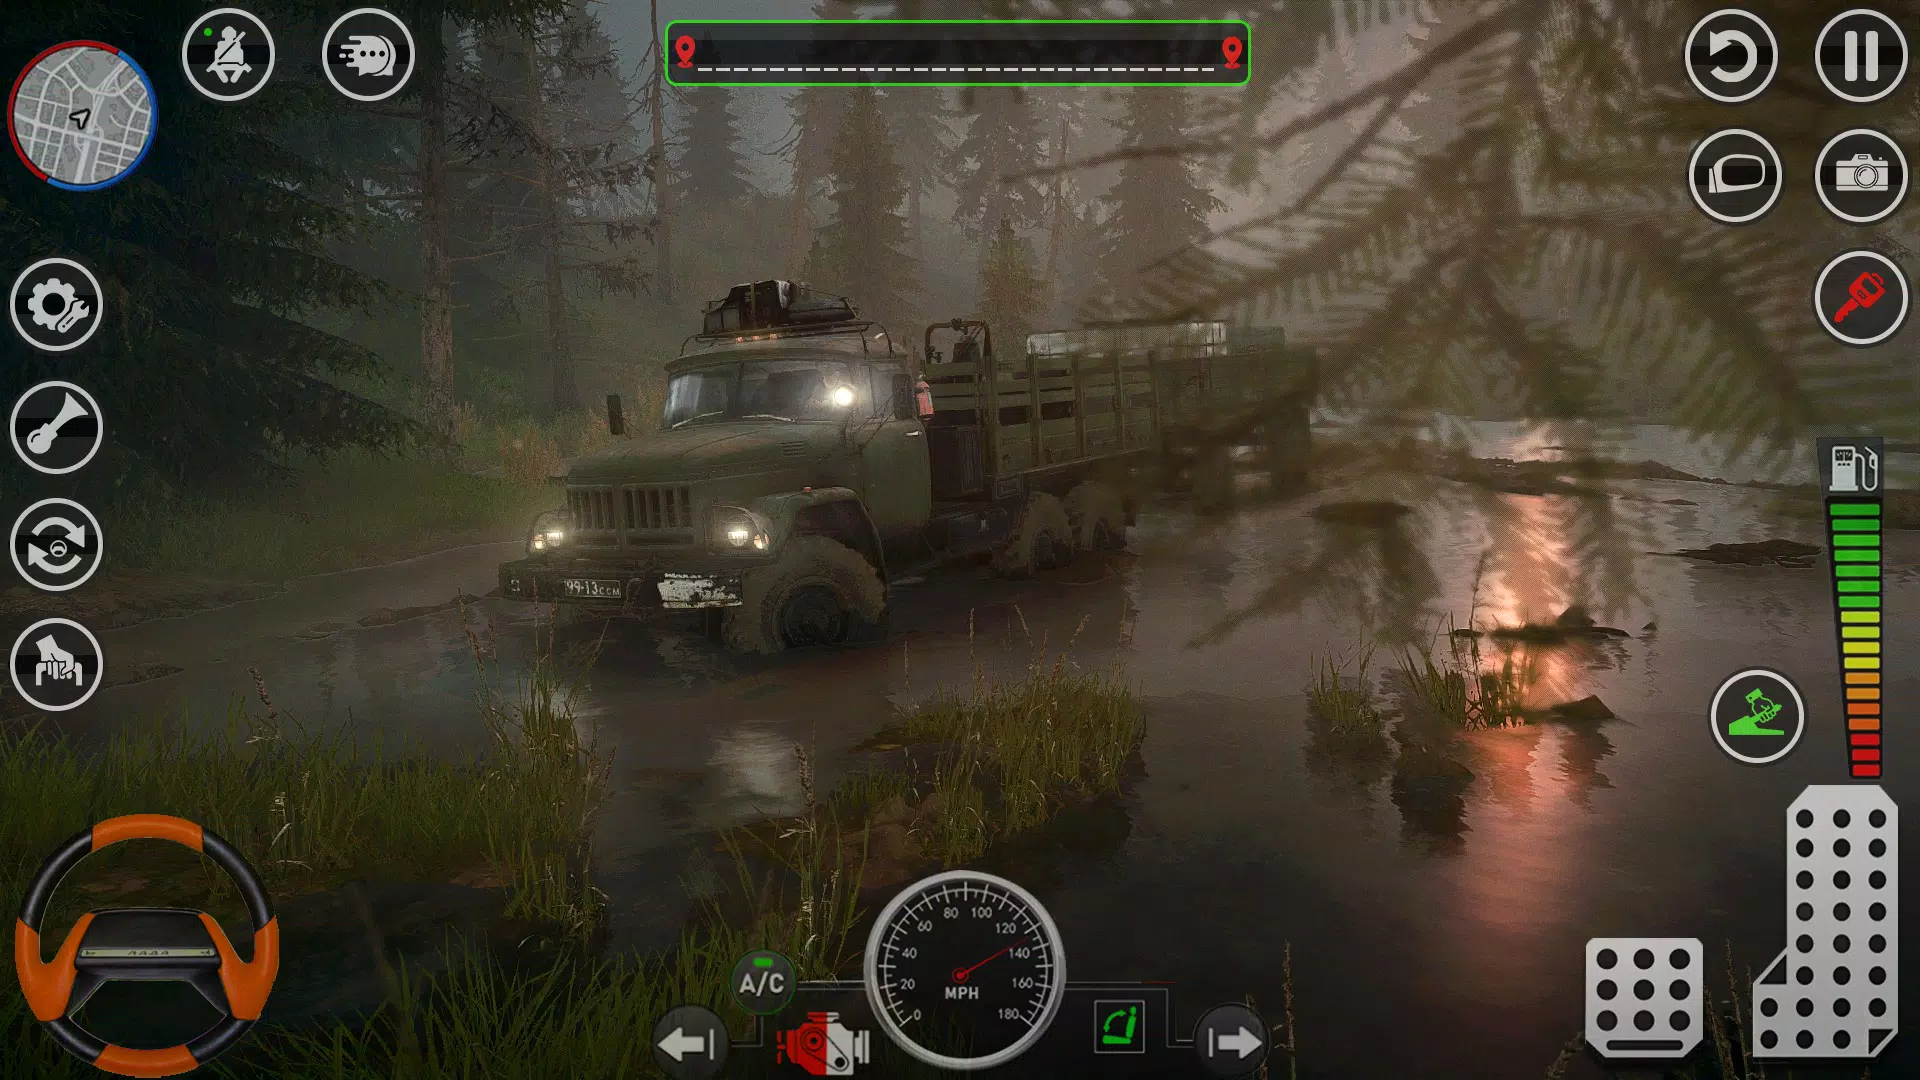 Download do APK de jogo de caminhão de lama brasi para Android